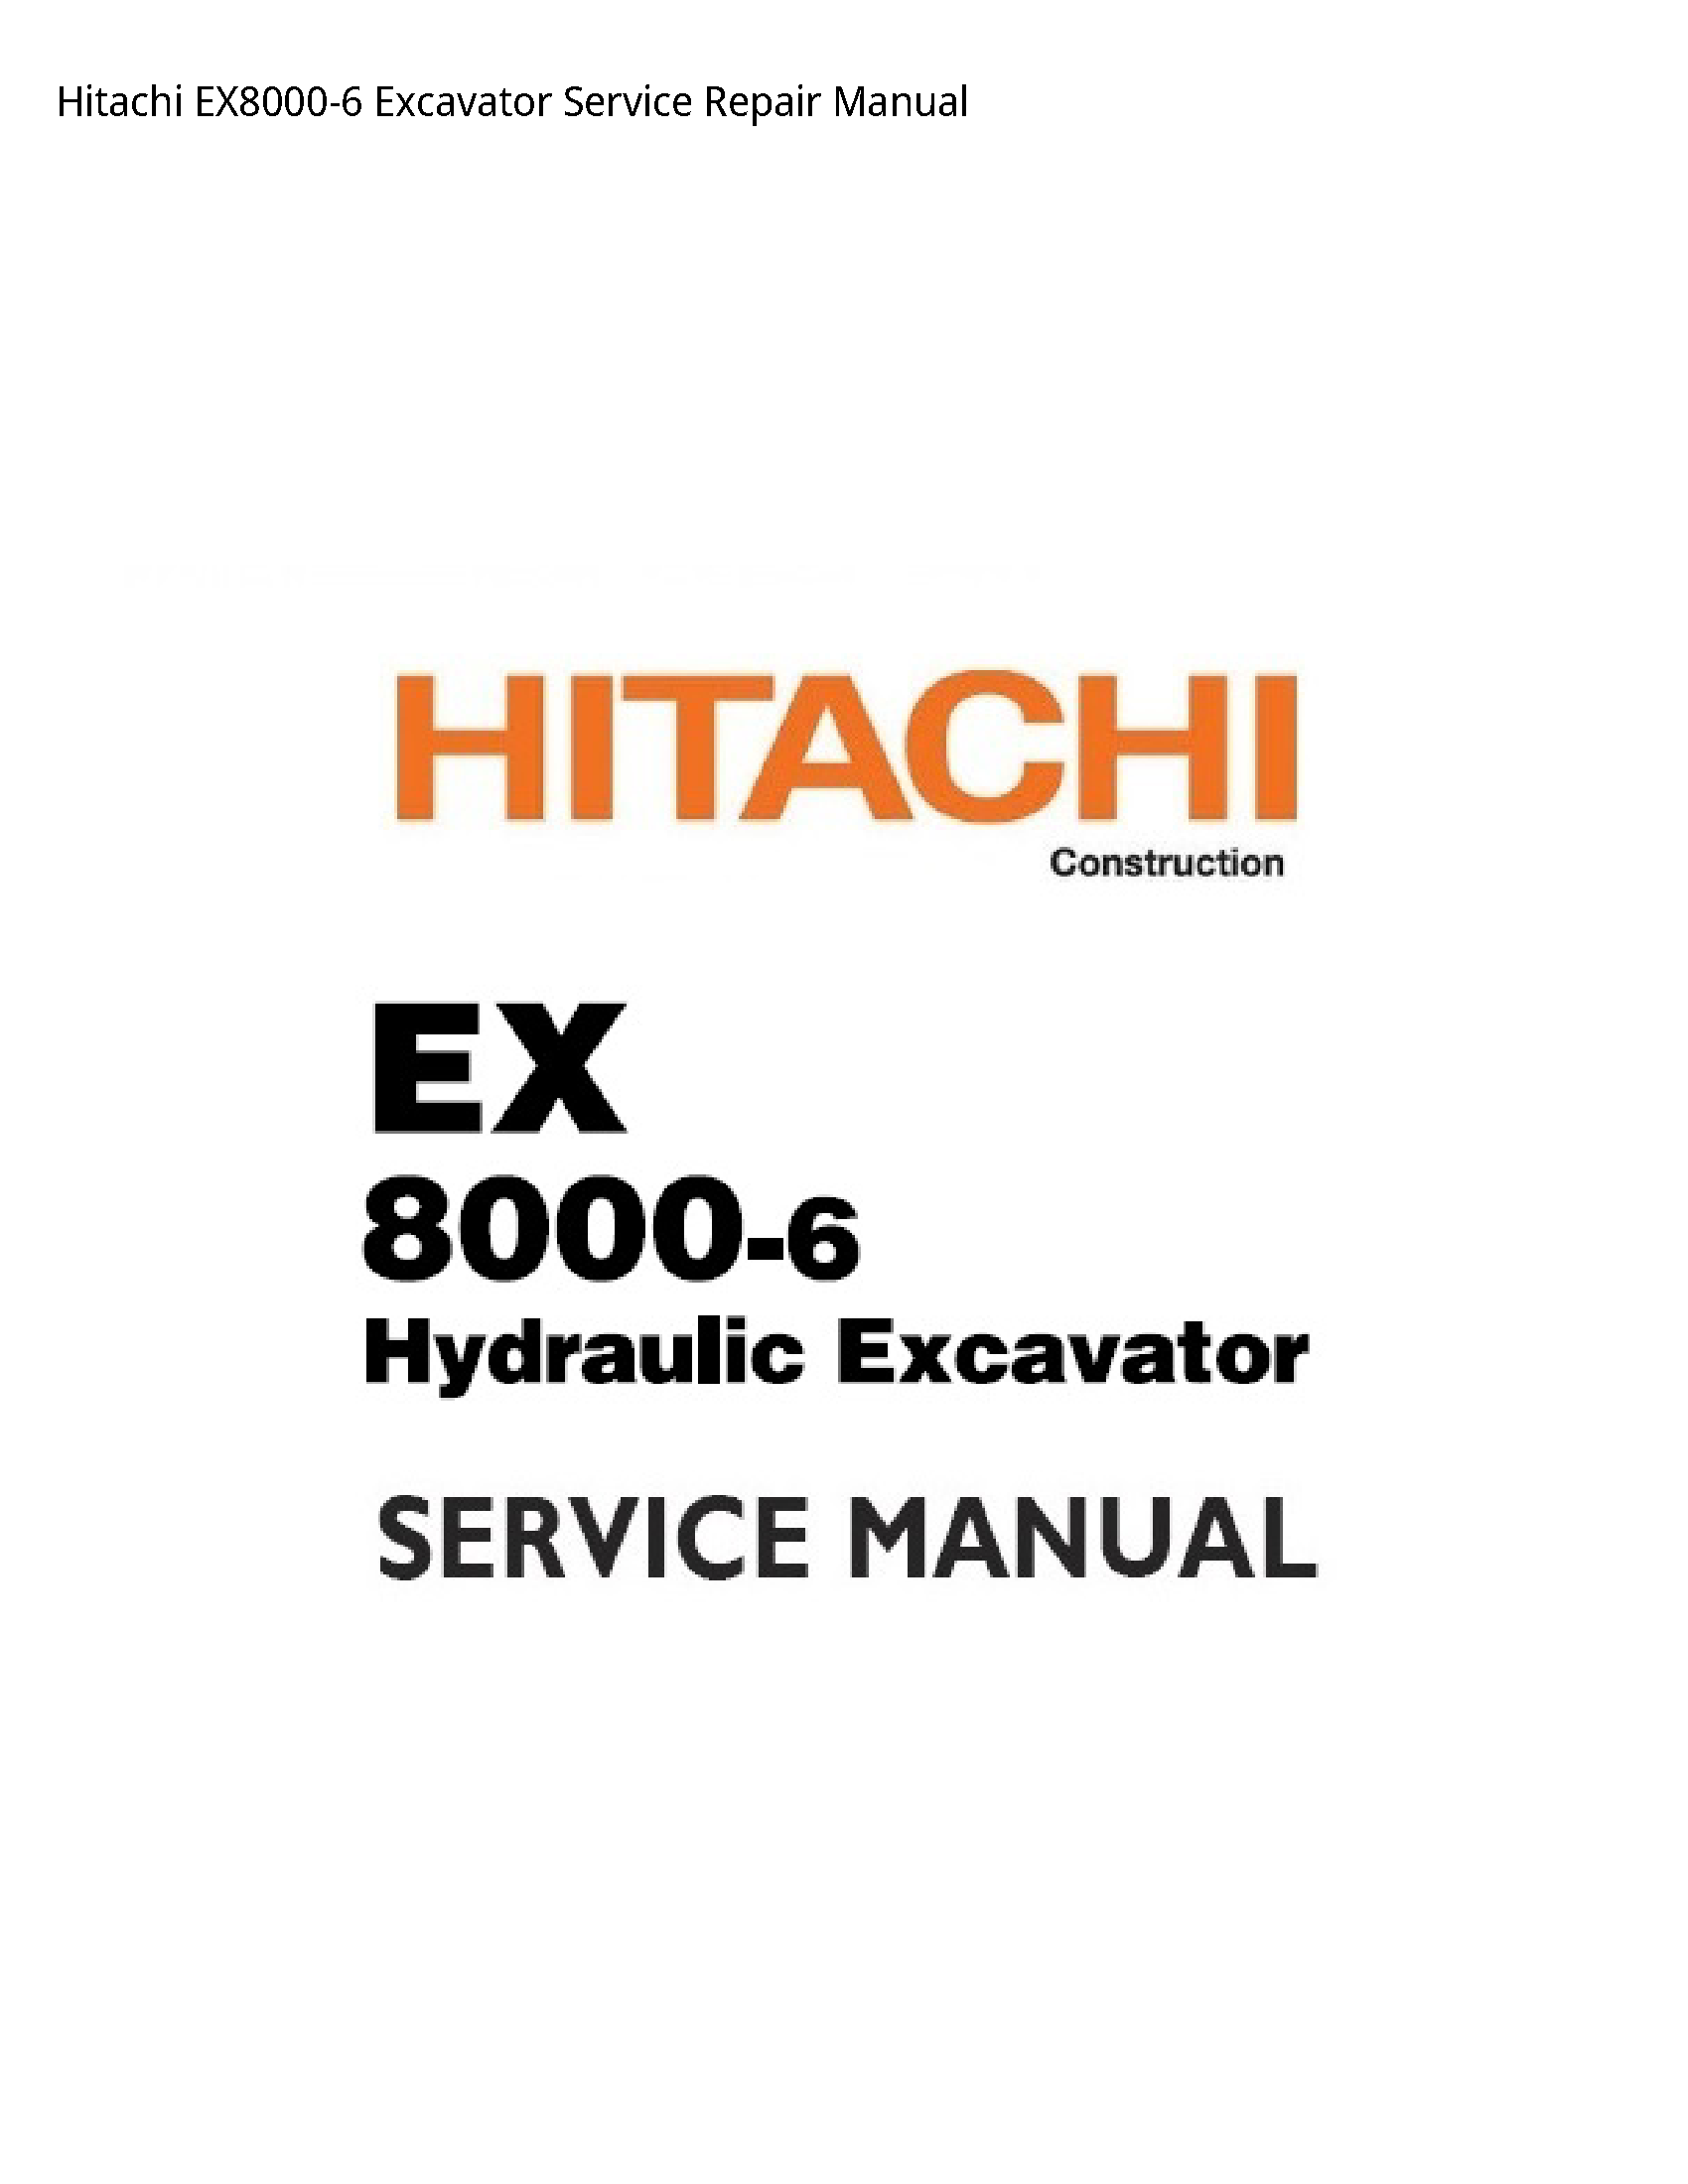 Hitachi EX8000-6 Excavator manual